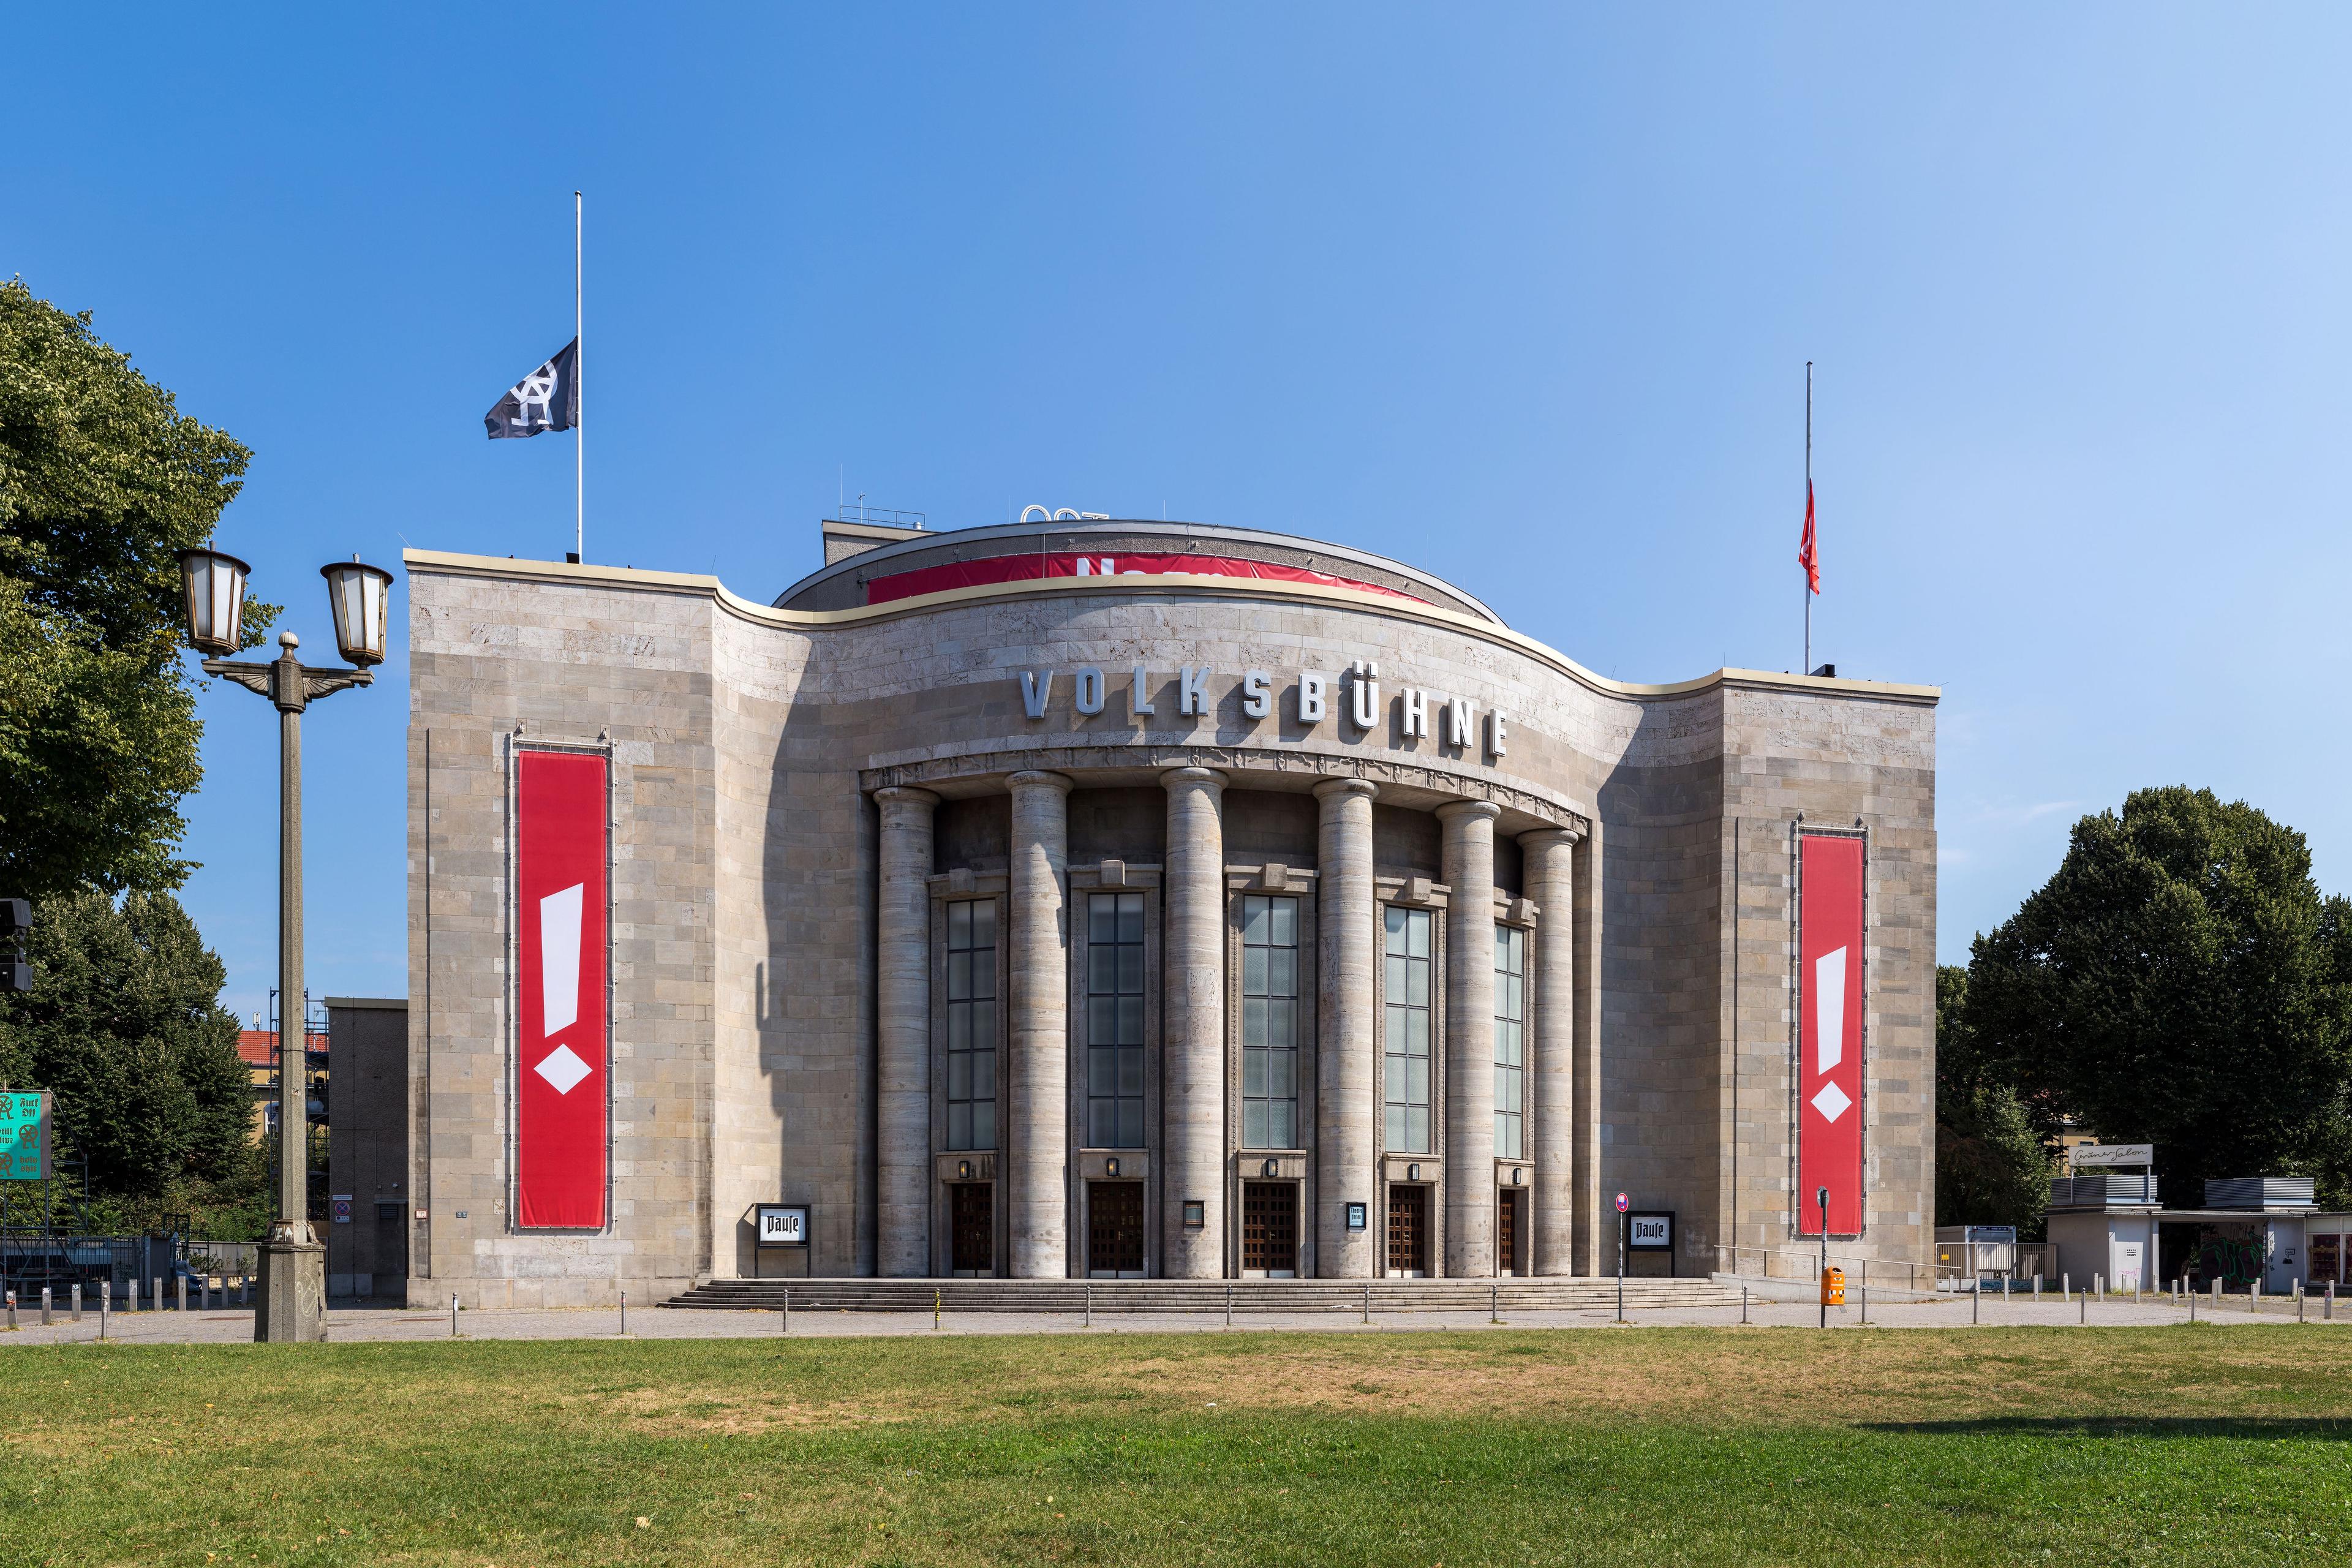 Theater "Volksbühne" am Rosa-Luxemburg-Platz in Berlin-Mitte. Das Gebäude wurde von 1913 bis 1914 nach Plänen des A